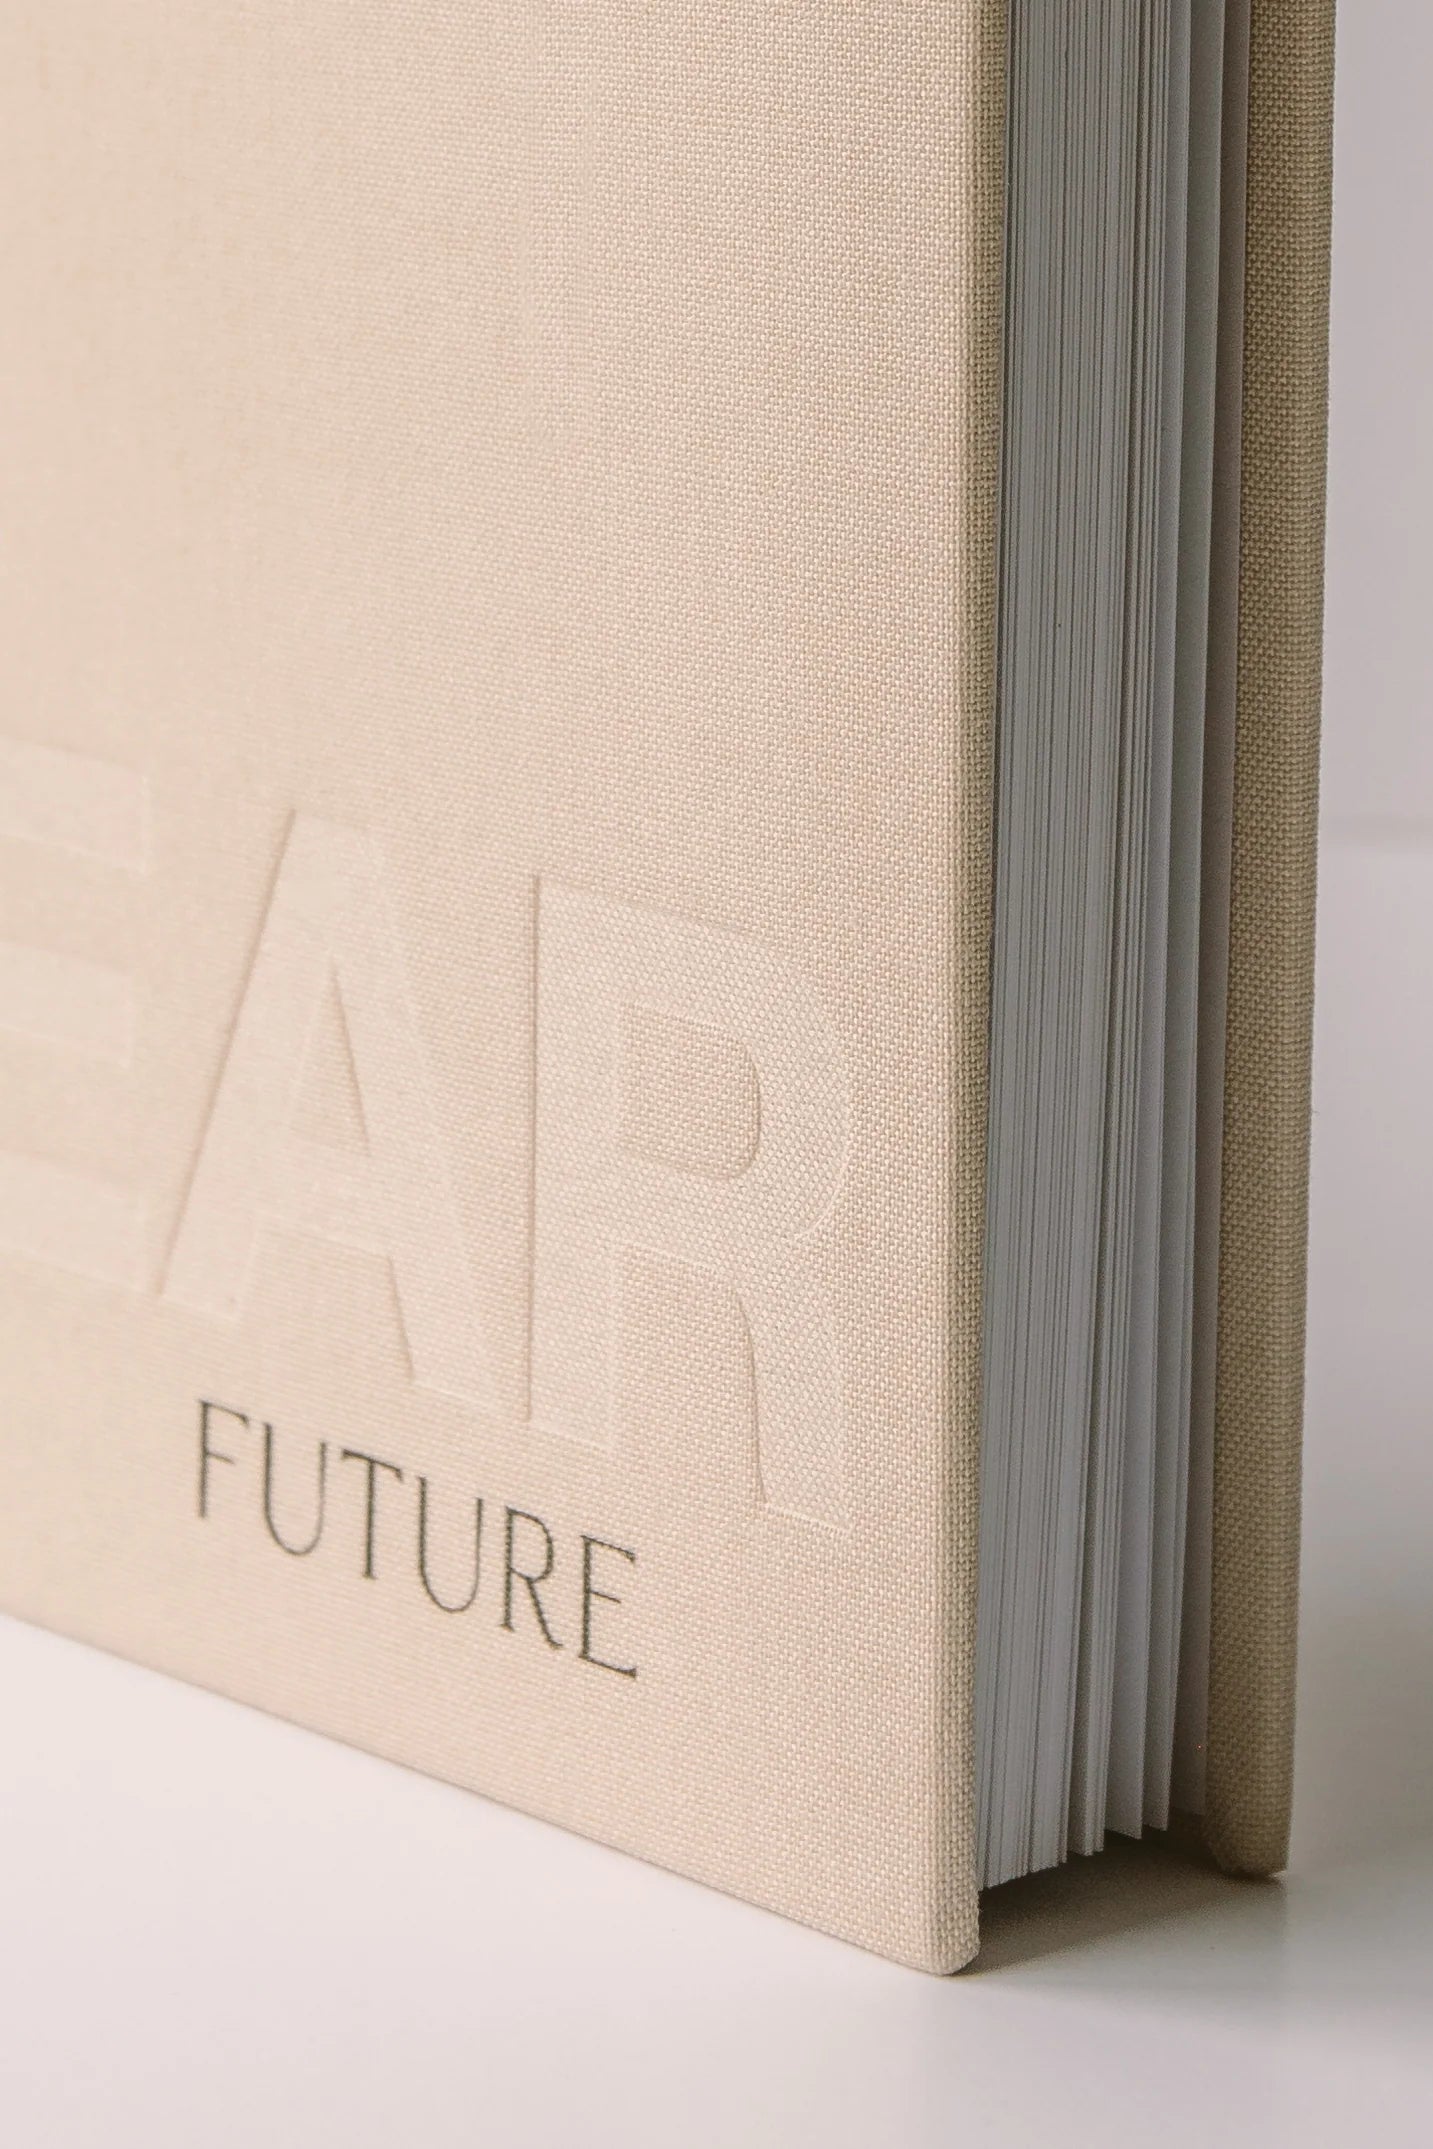 Dear The Series | Dear Future